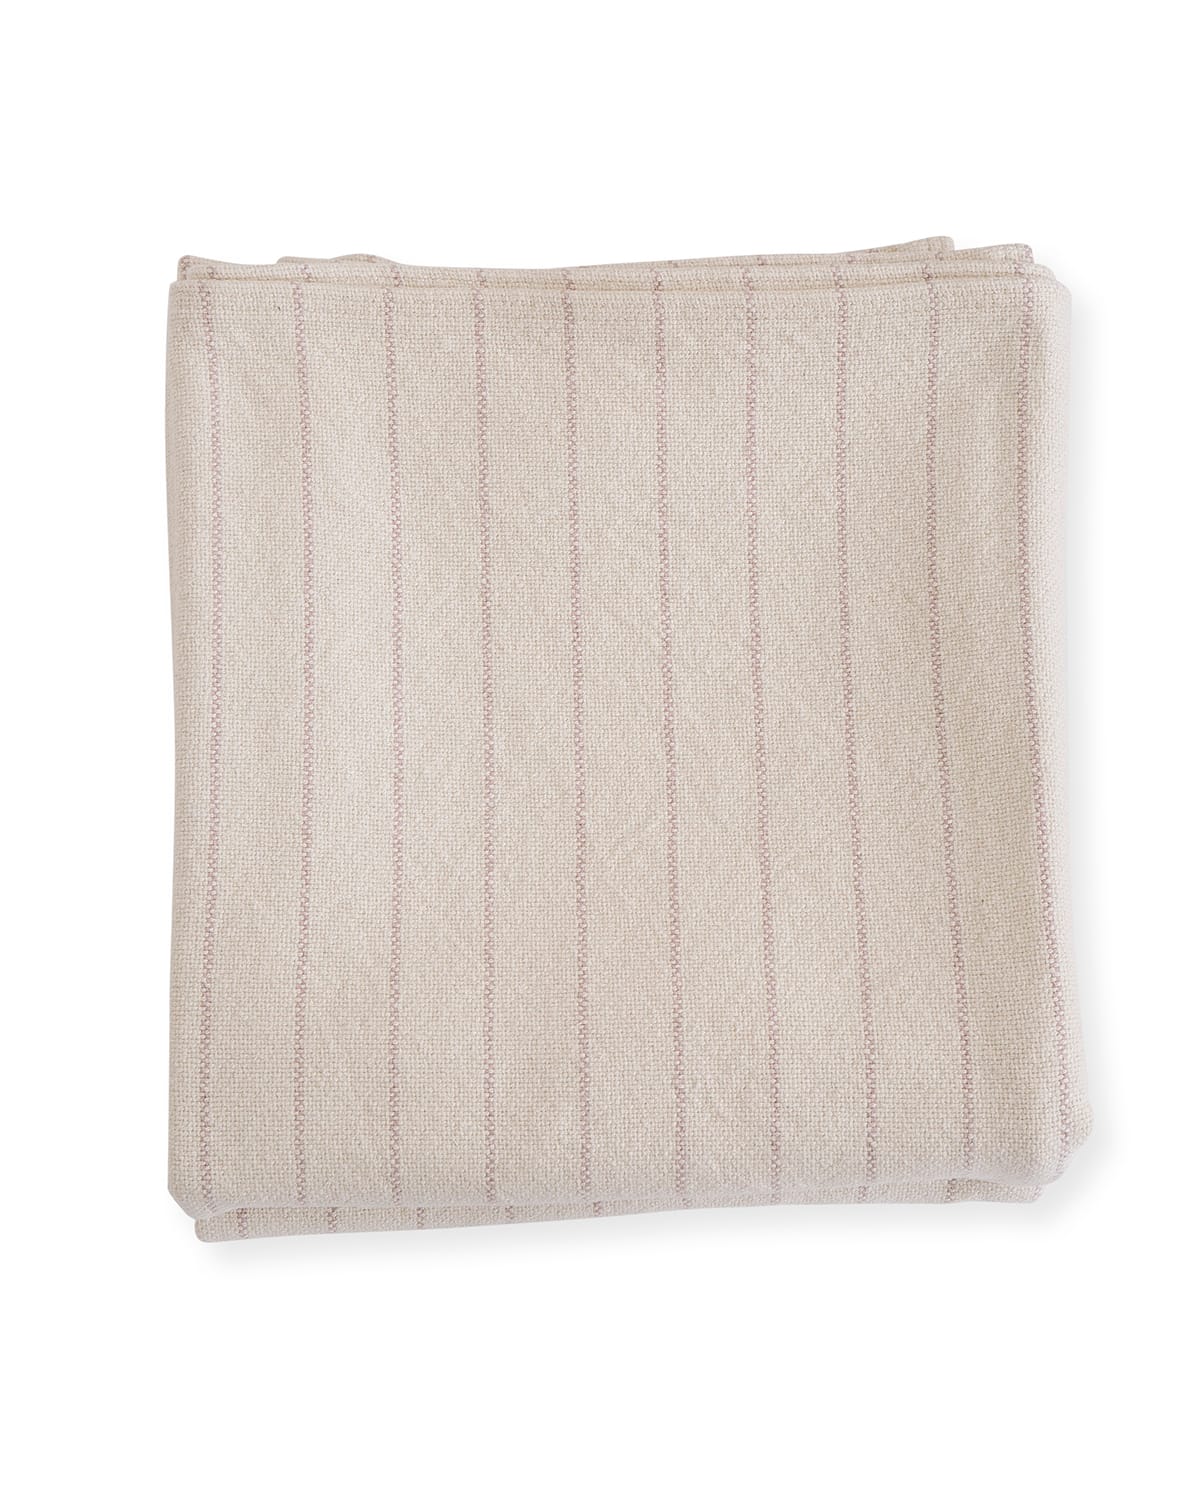 Evangeline Linens Pinstripe Herringbone Cotton Twin Blanket, Blush In Neutral